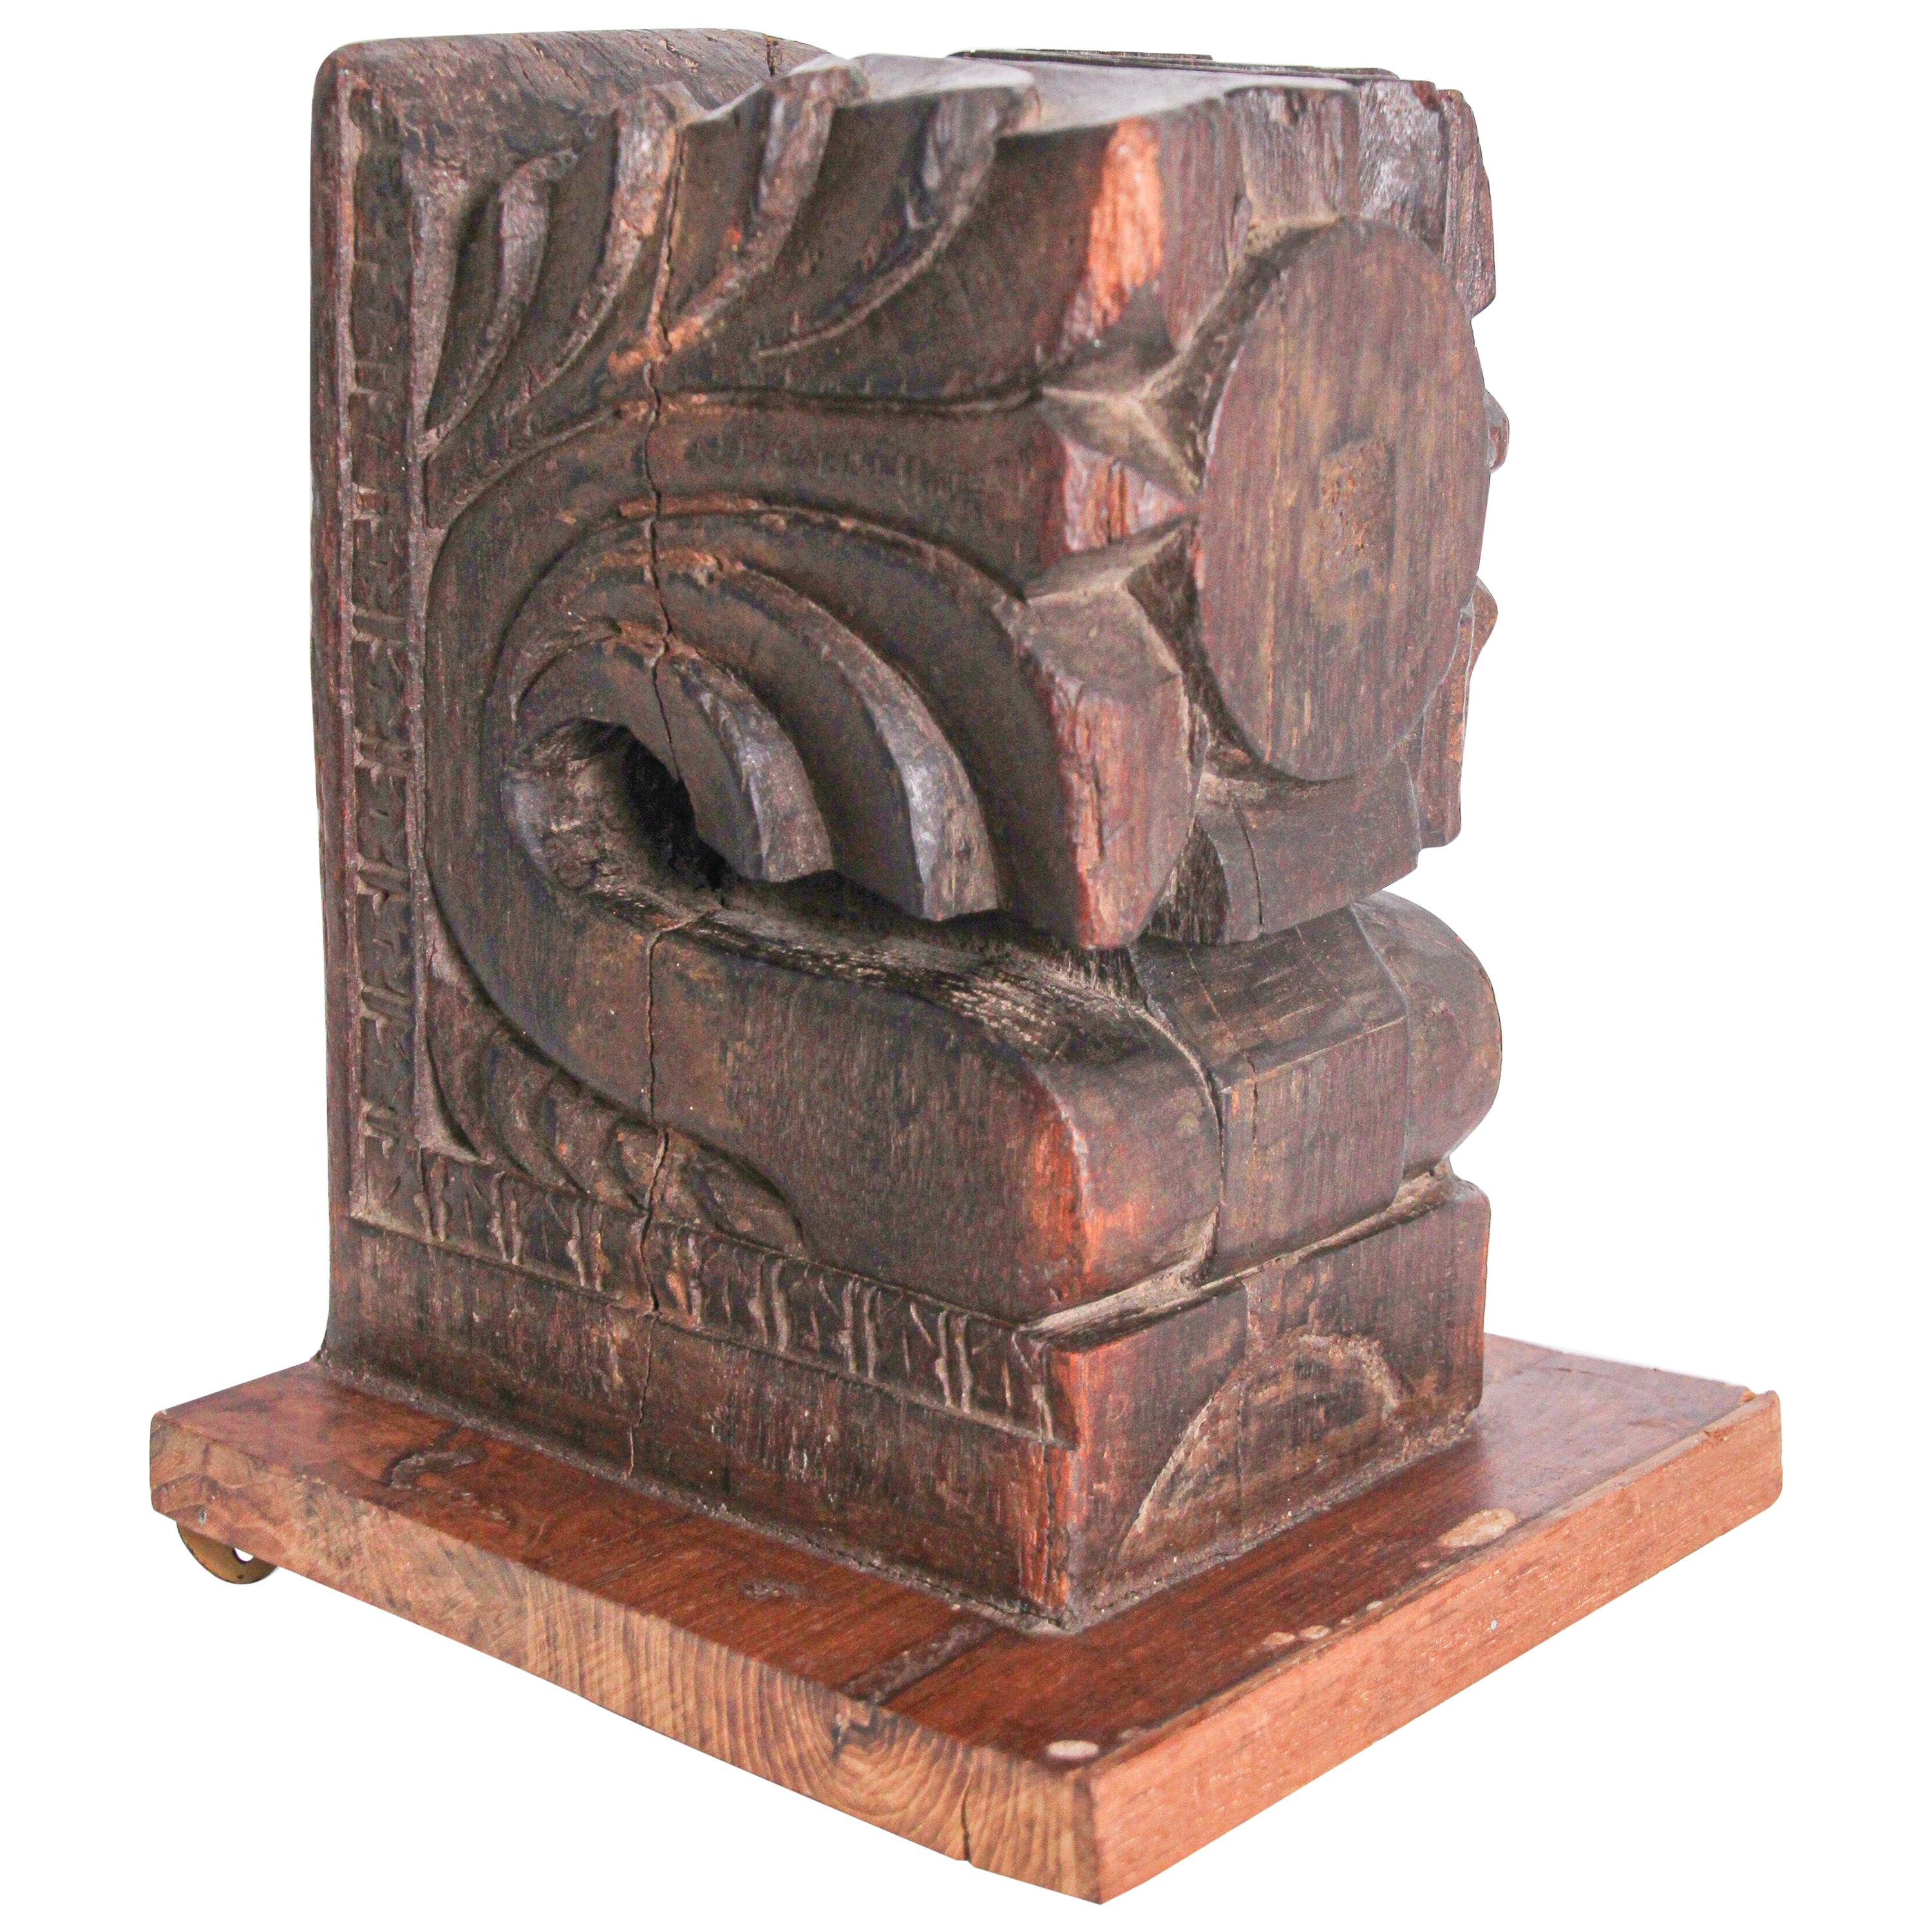 Fragment de temple hindou architectural en bois sculpté provenant d'Inde